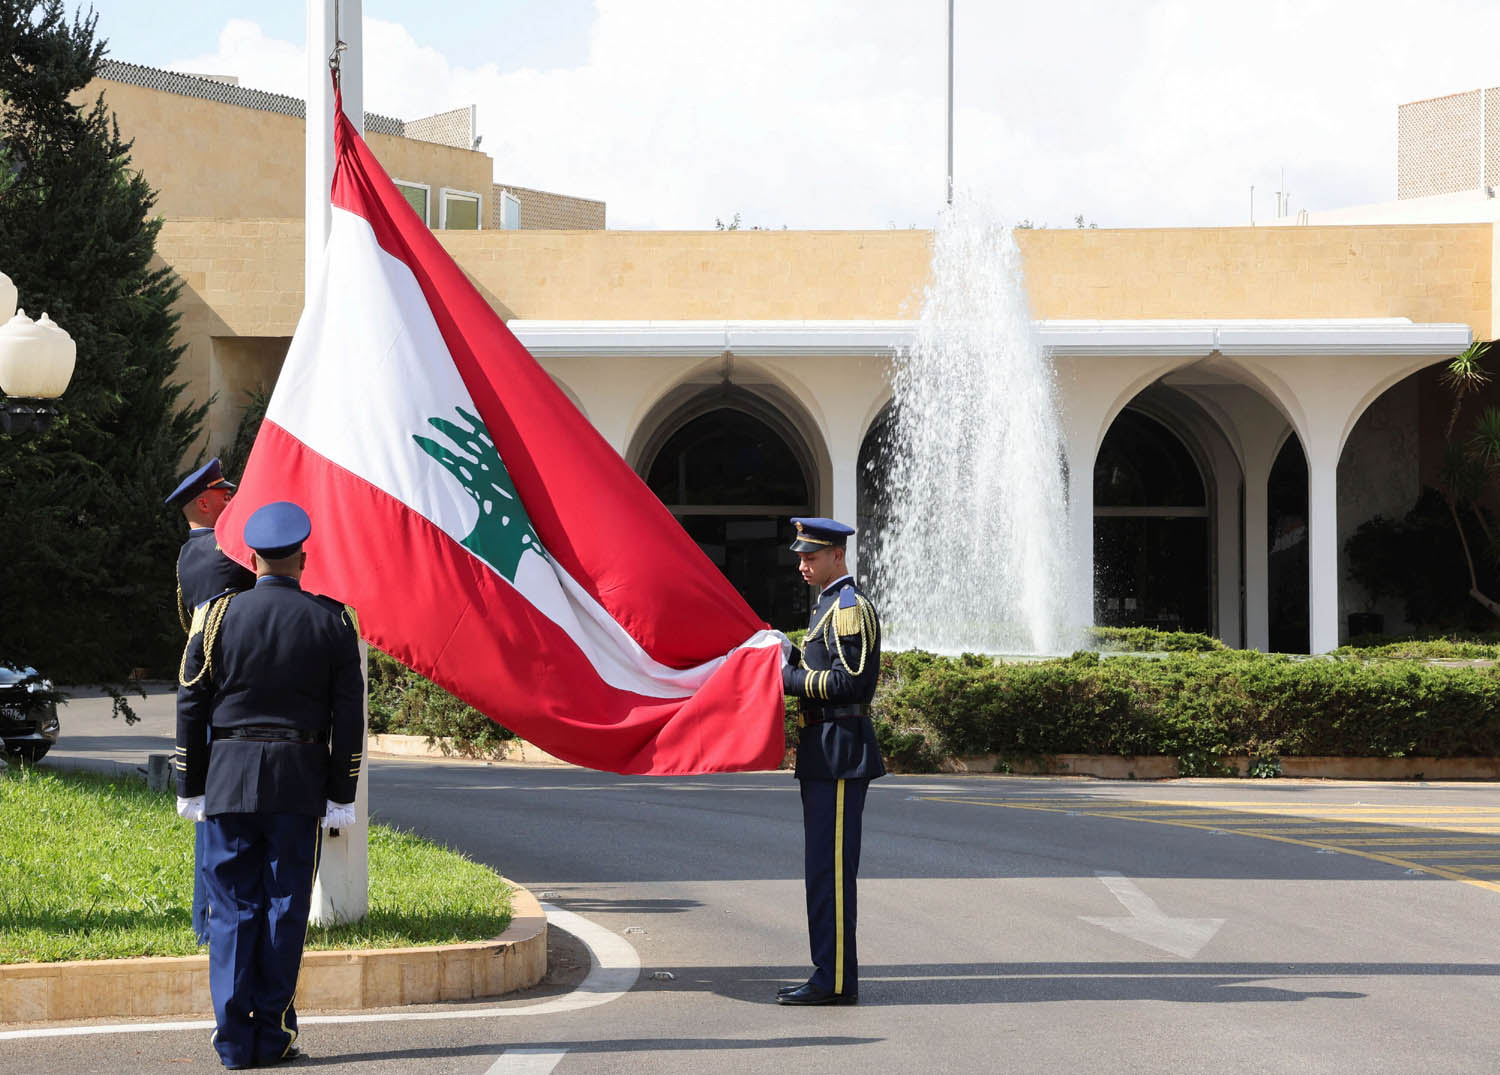 انزال العلم اللبناني بغياب رئيس في قصر بعبدا